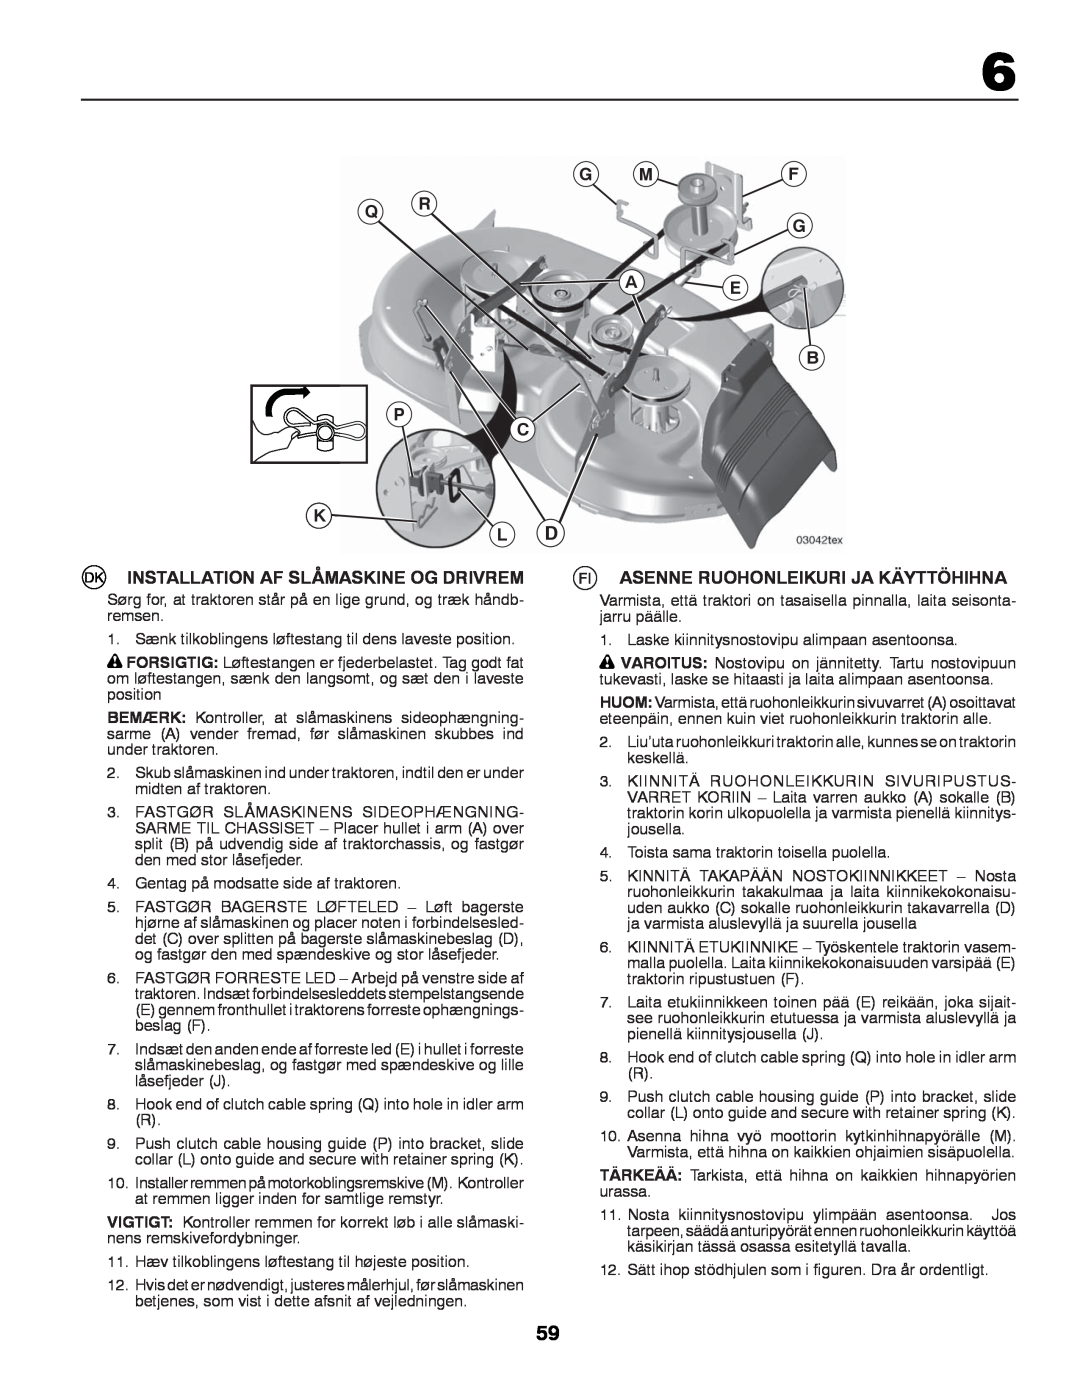 Partner Tech P145107 manual G Mf Q R G, A E B C, K L D, Installation Af Slåmaskine Og Drivrem 